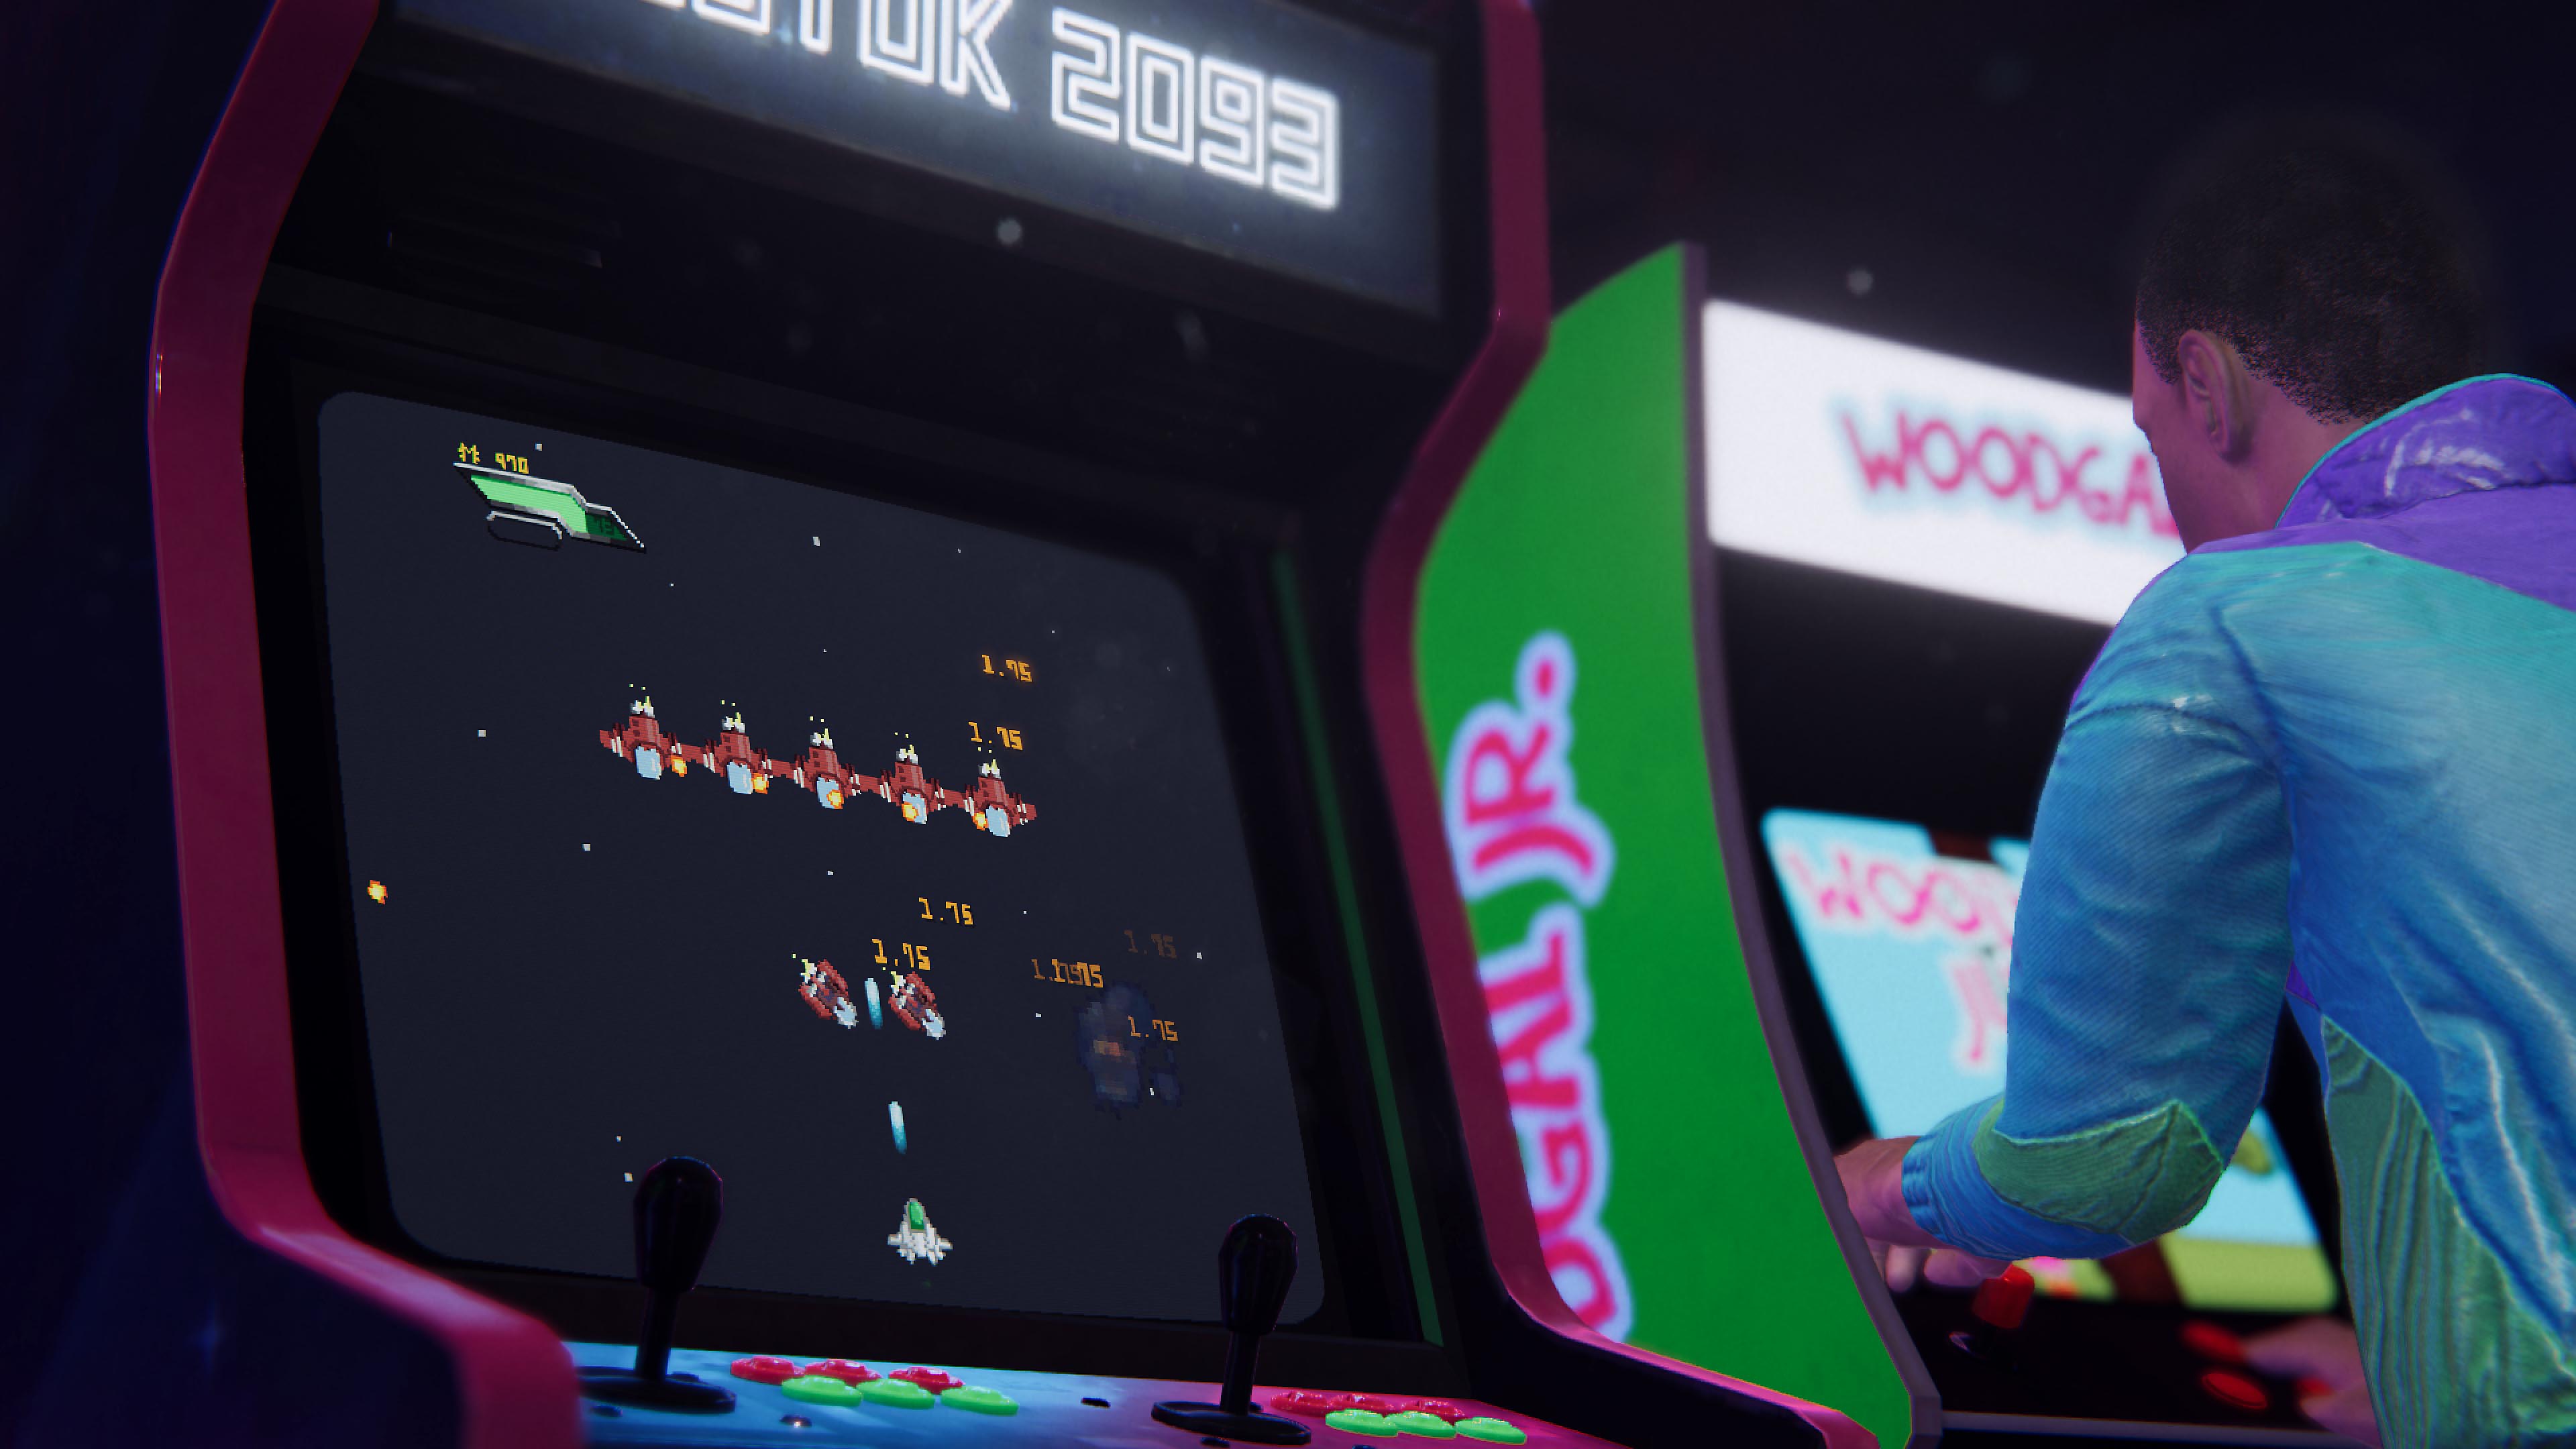 Captura de pantalla de Arcade Paradise que muestra dos gabinetes de juegos retro